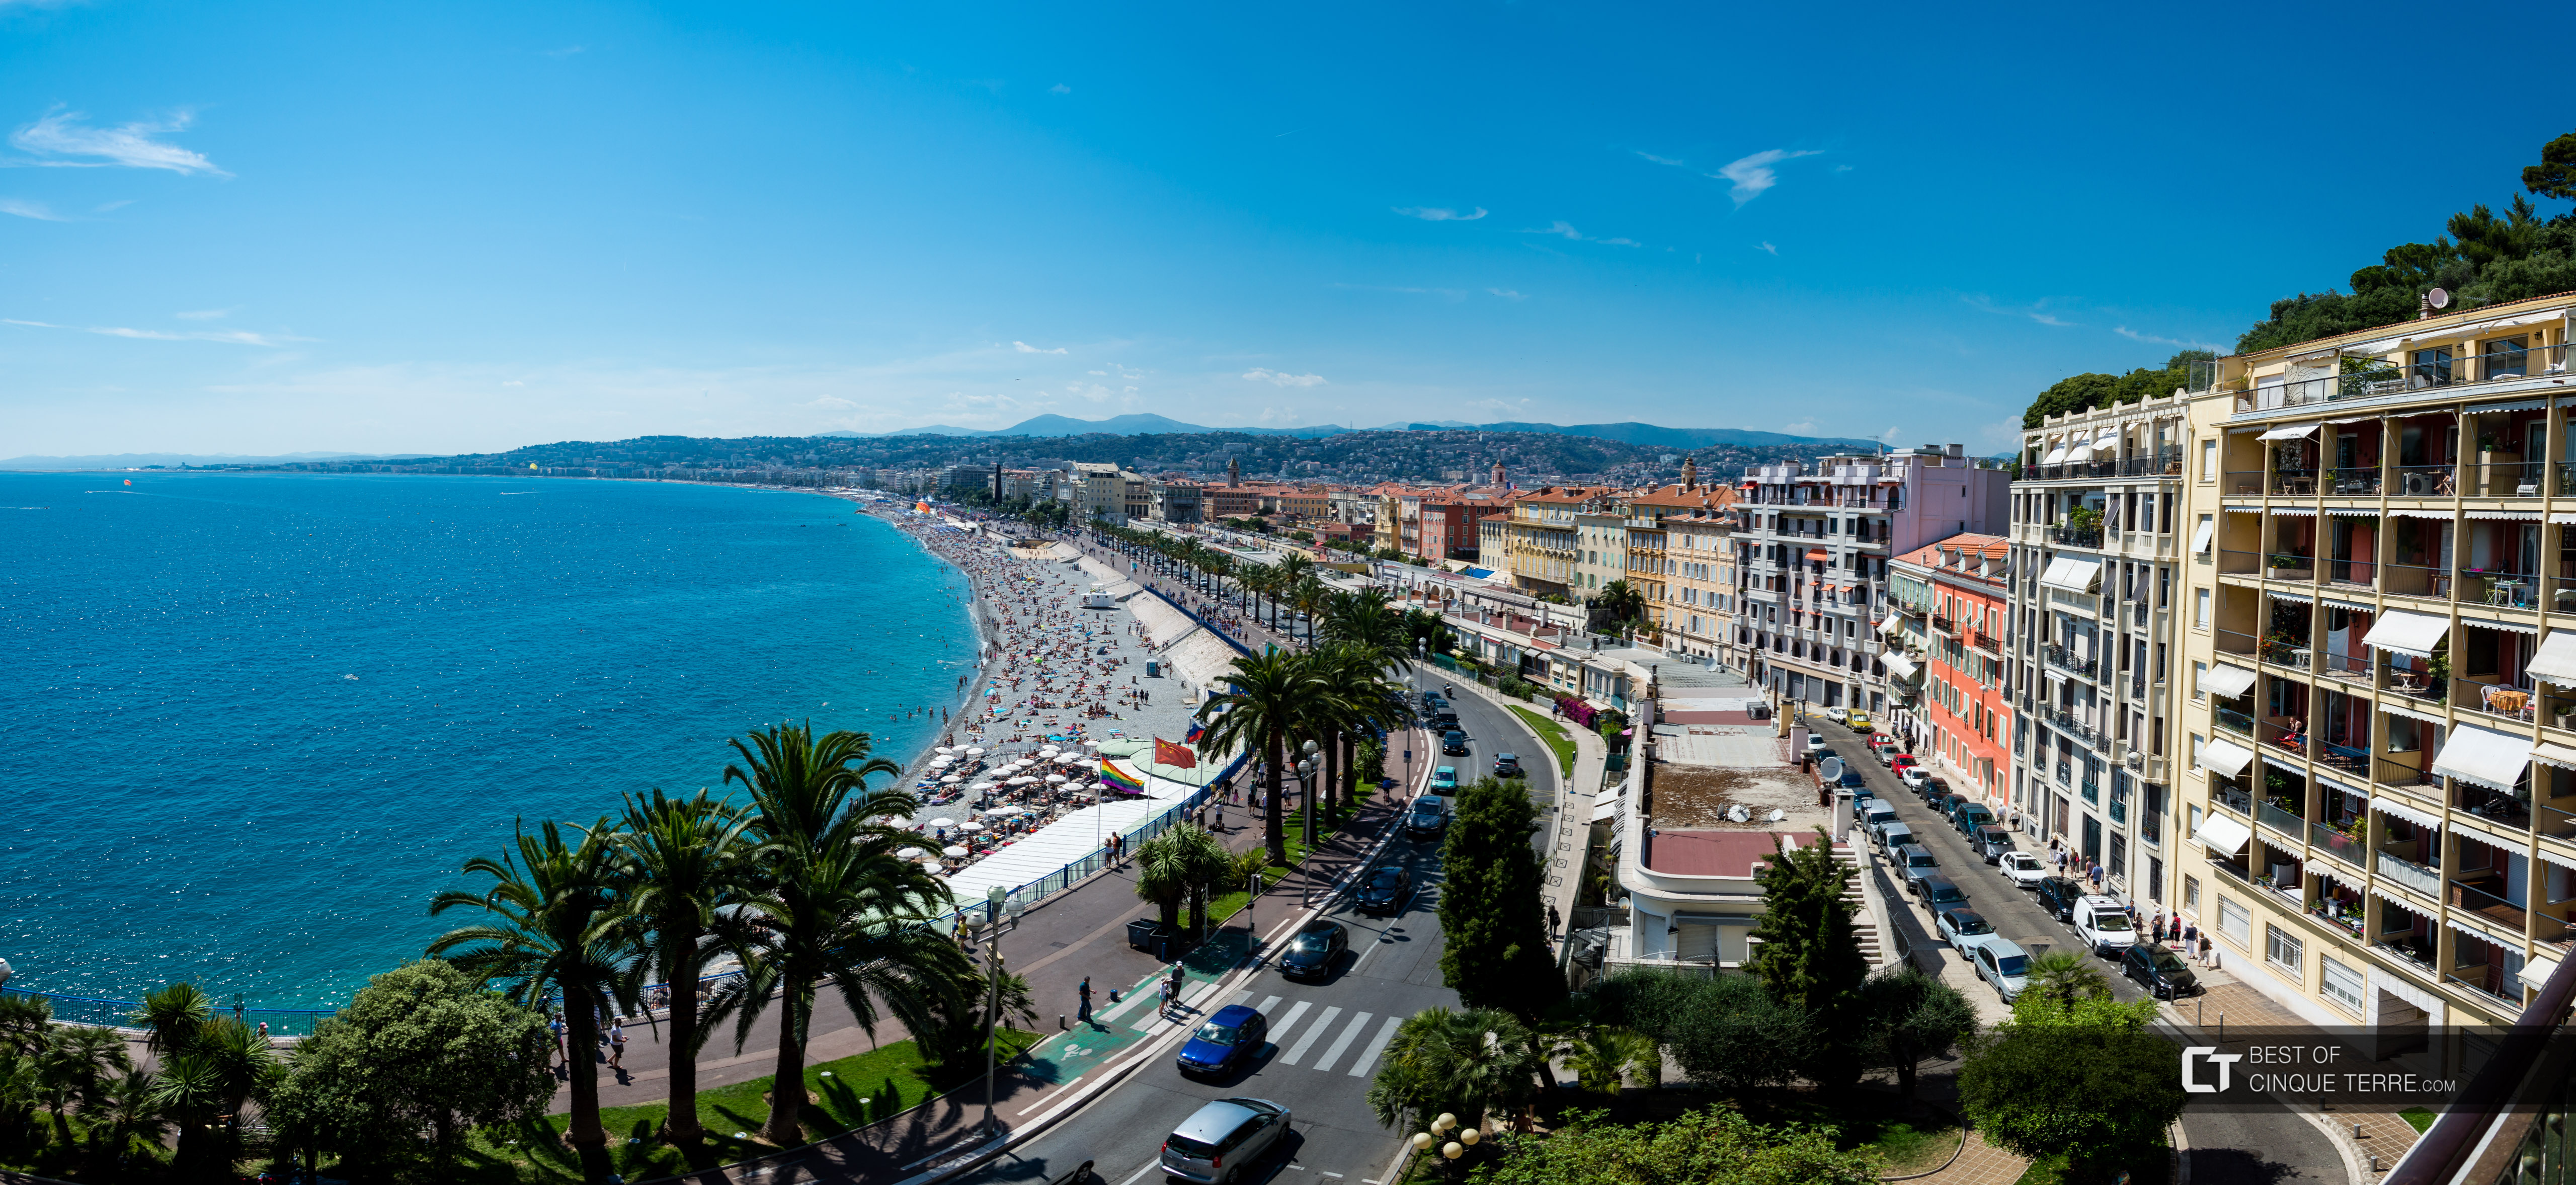 Promenade des Anglais vista do ponto panorâmico da Colina do Castelo, Nice, França